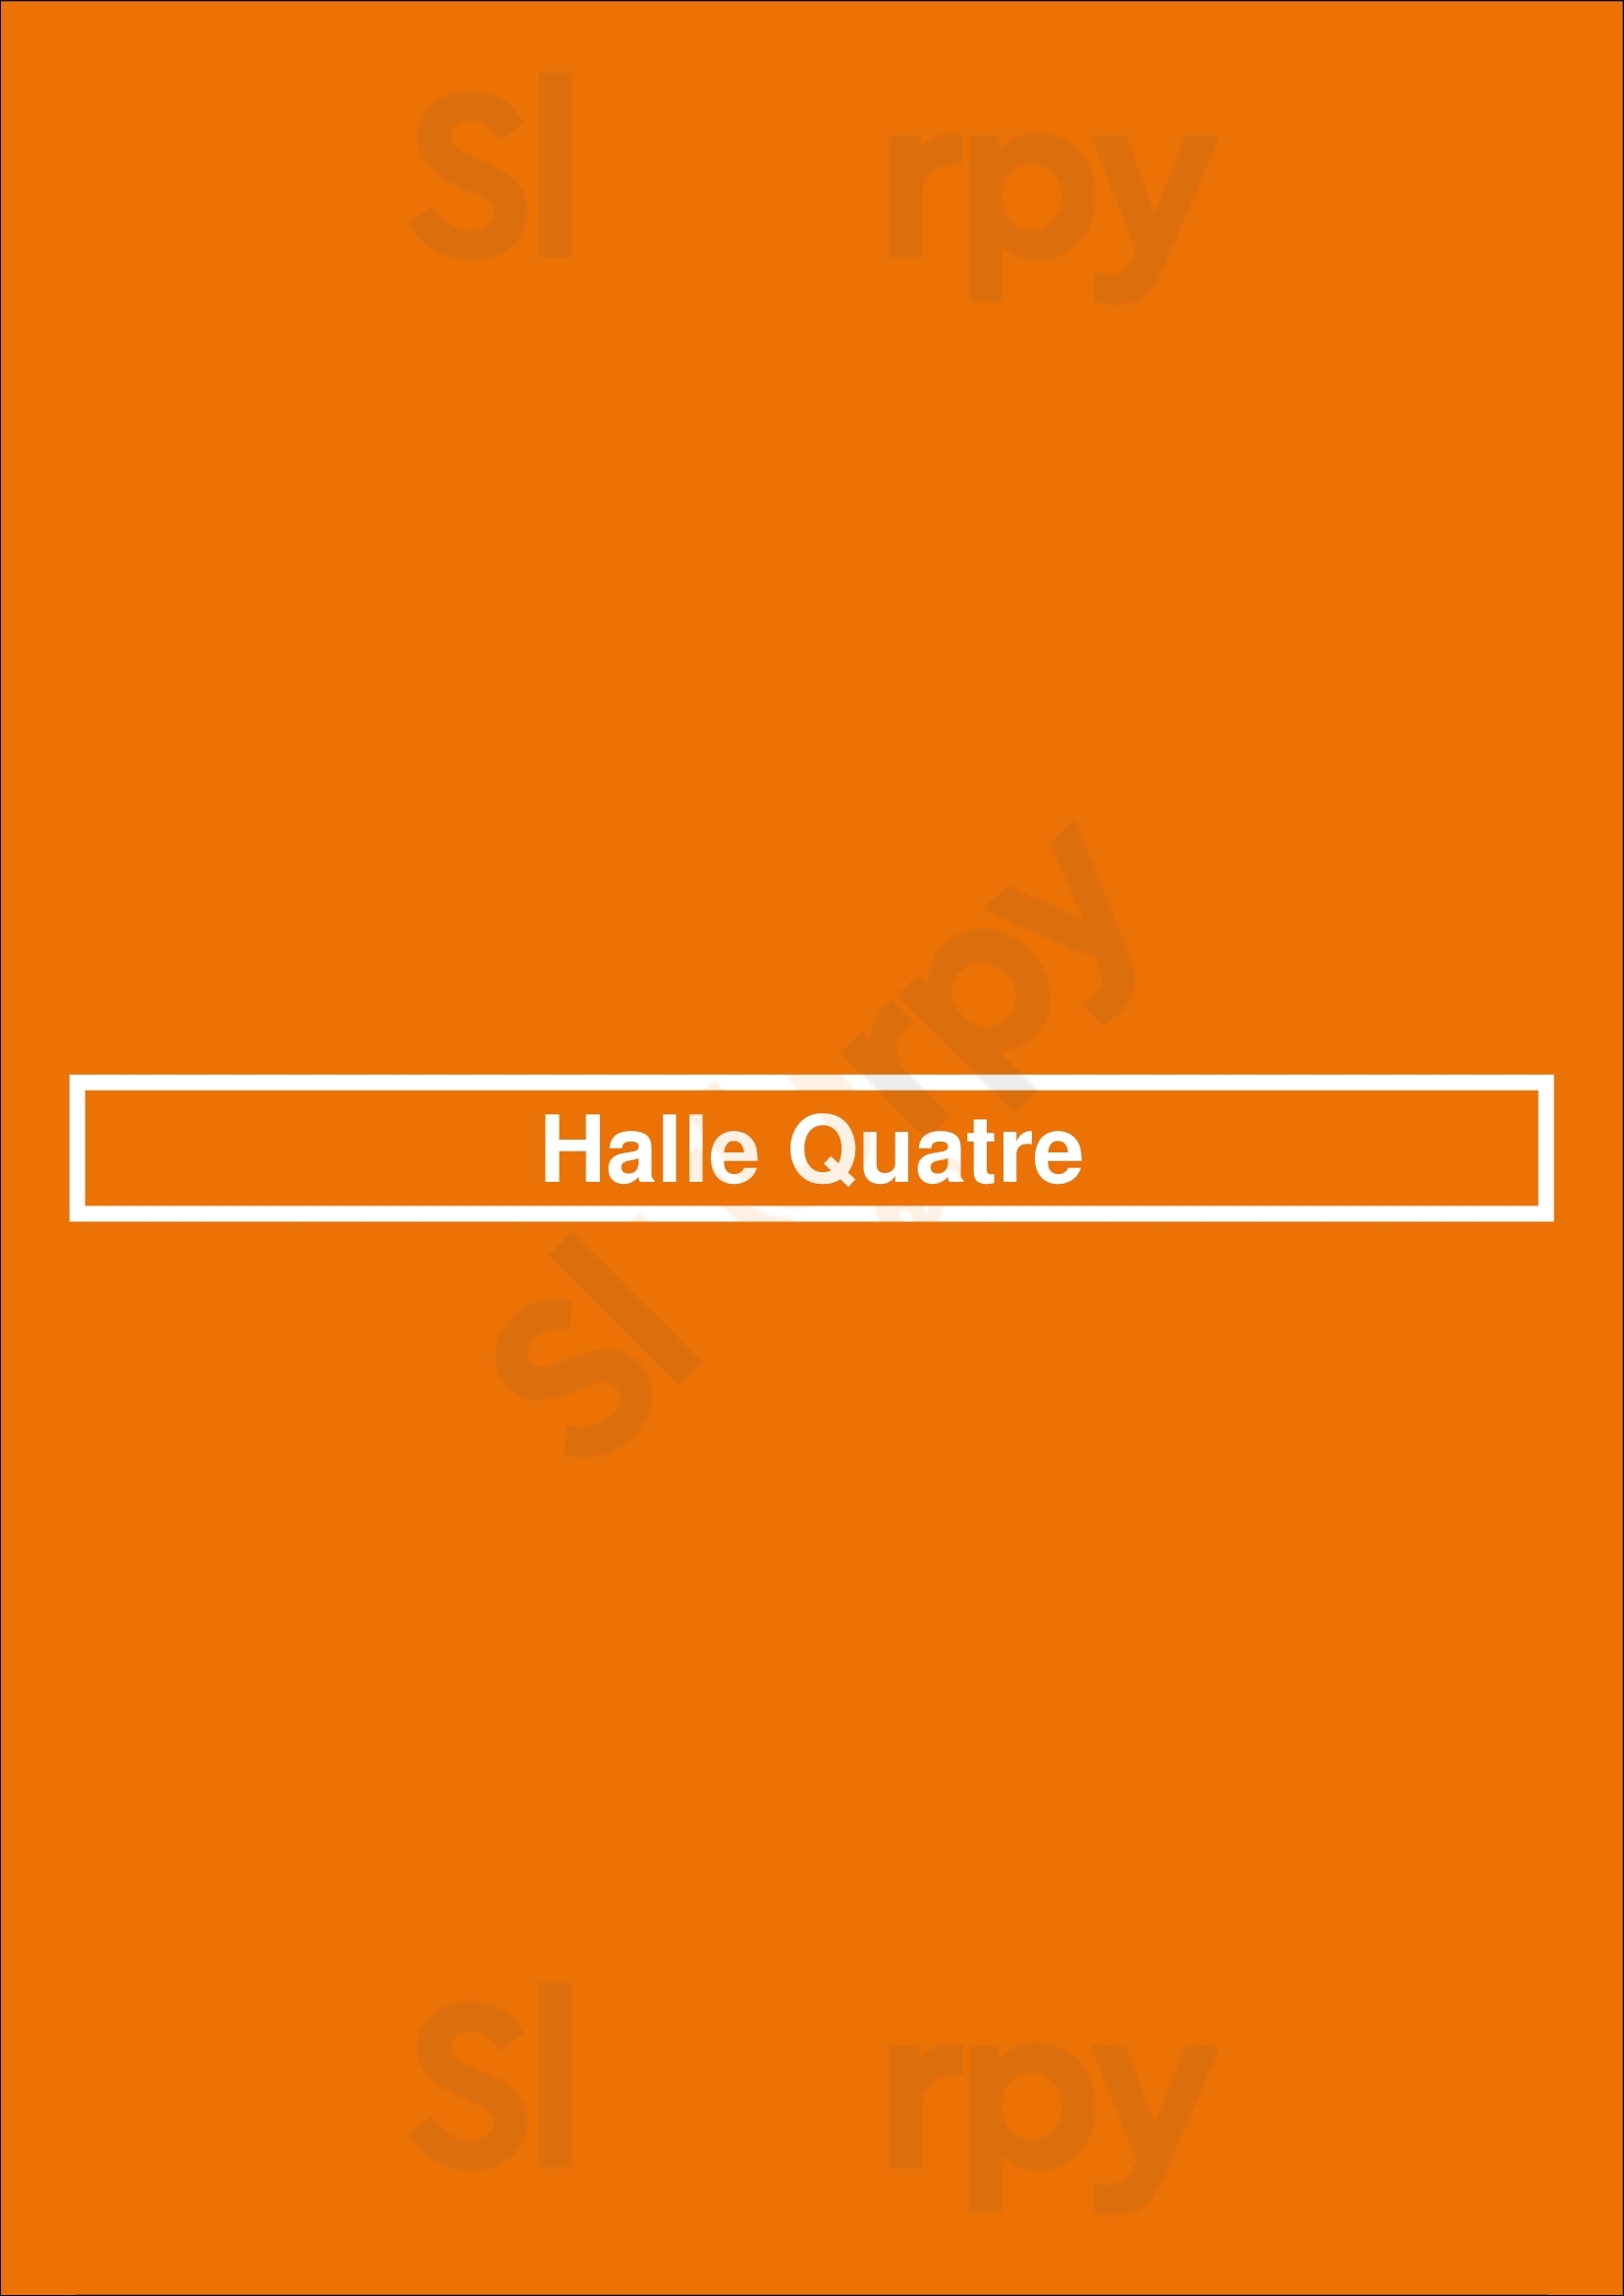 Halle Quatre Paris Menu - 1